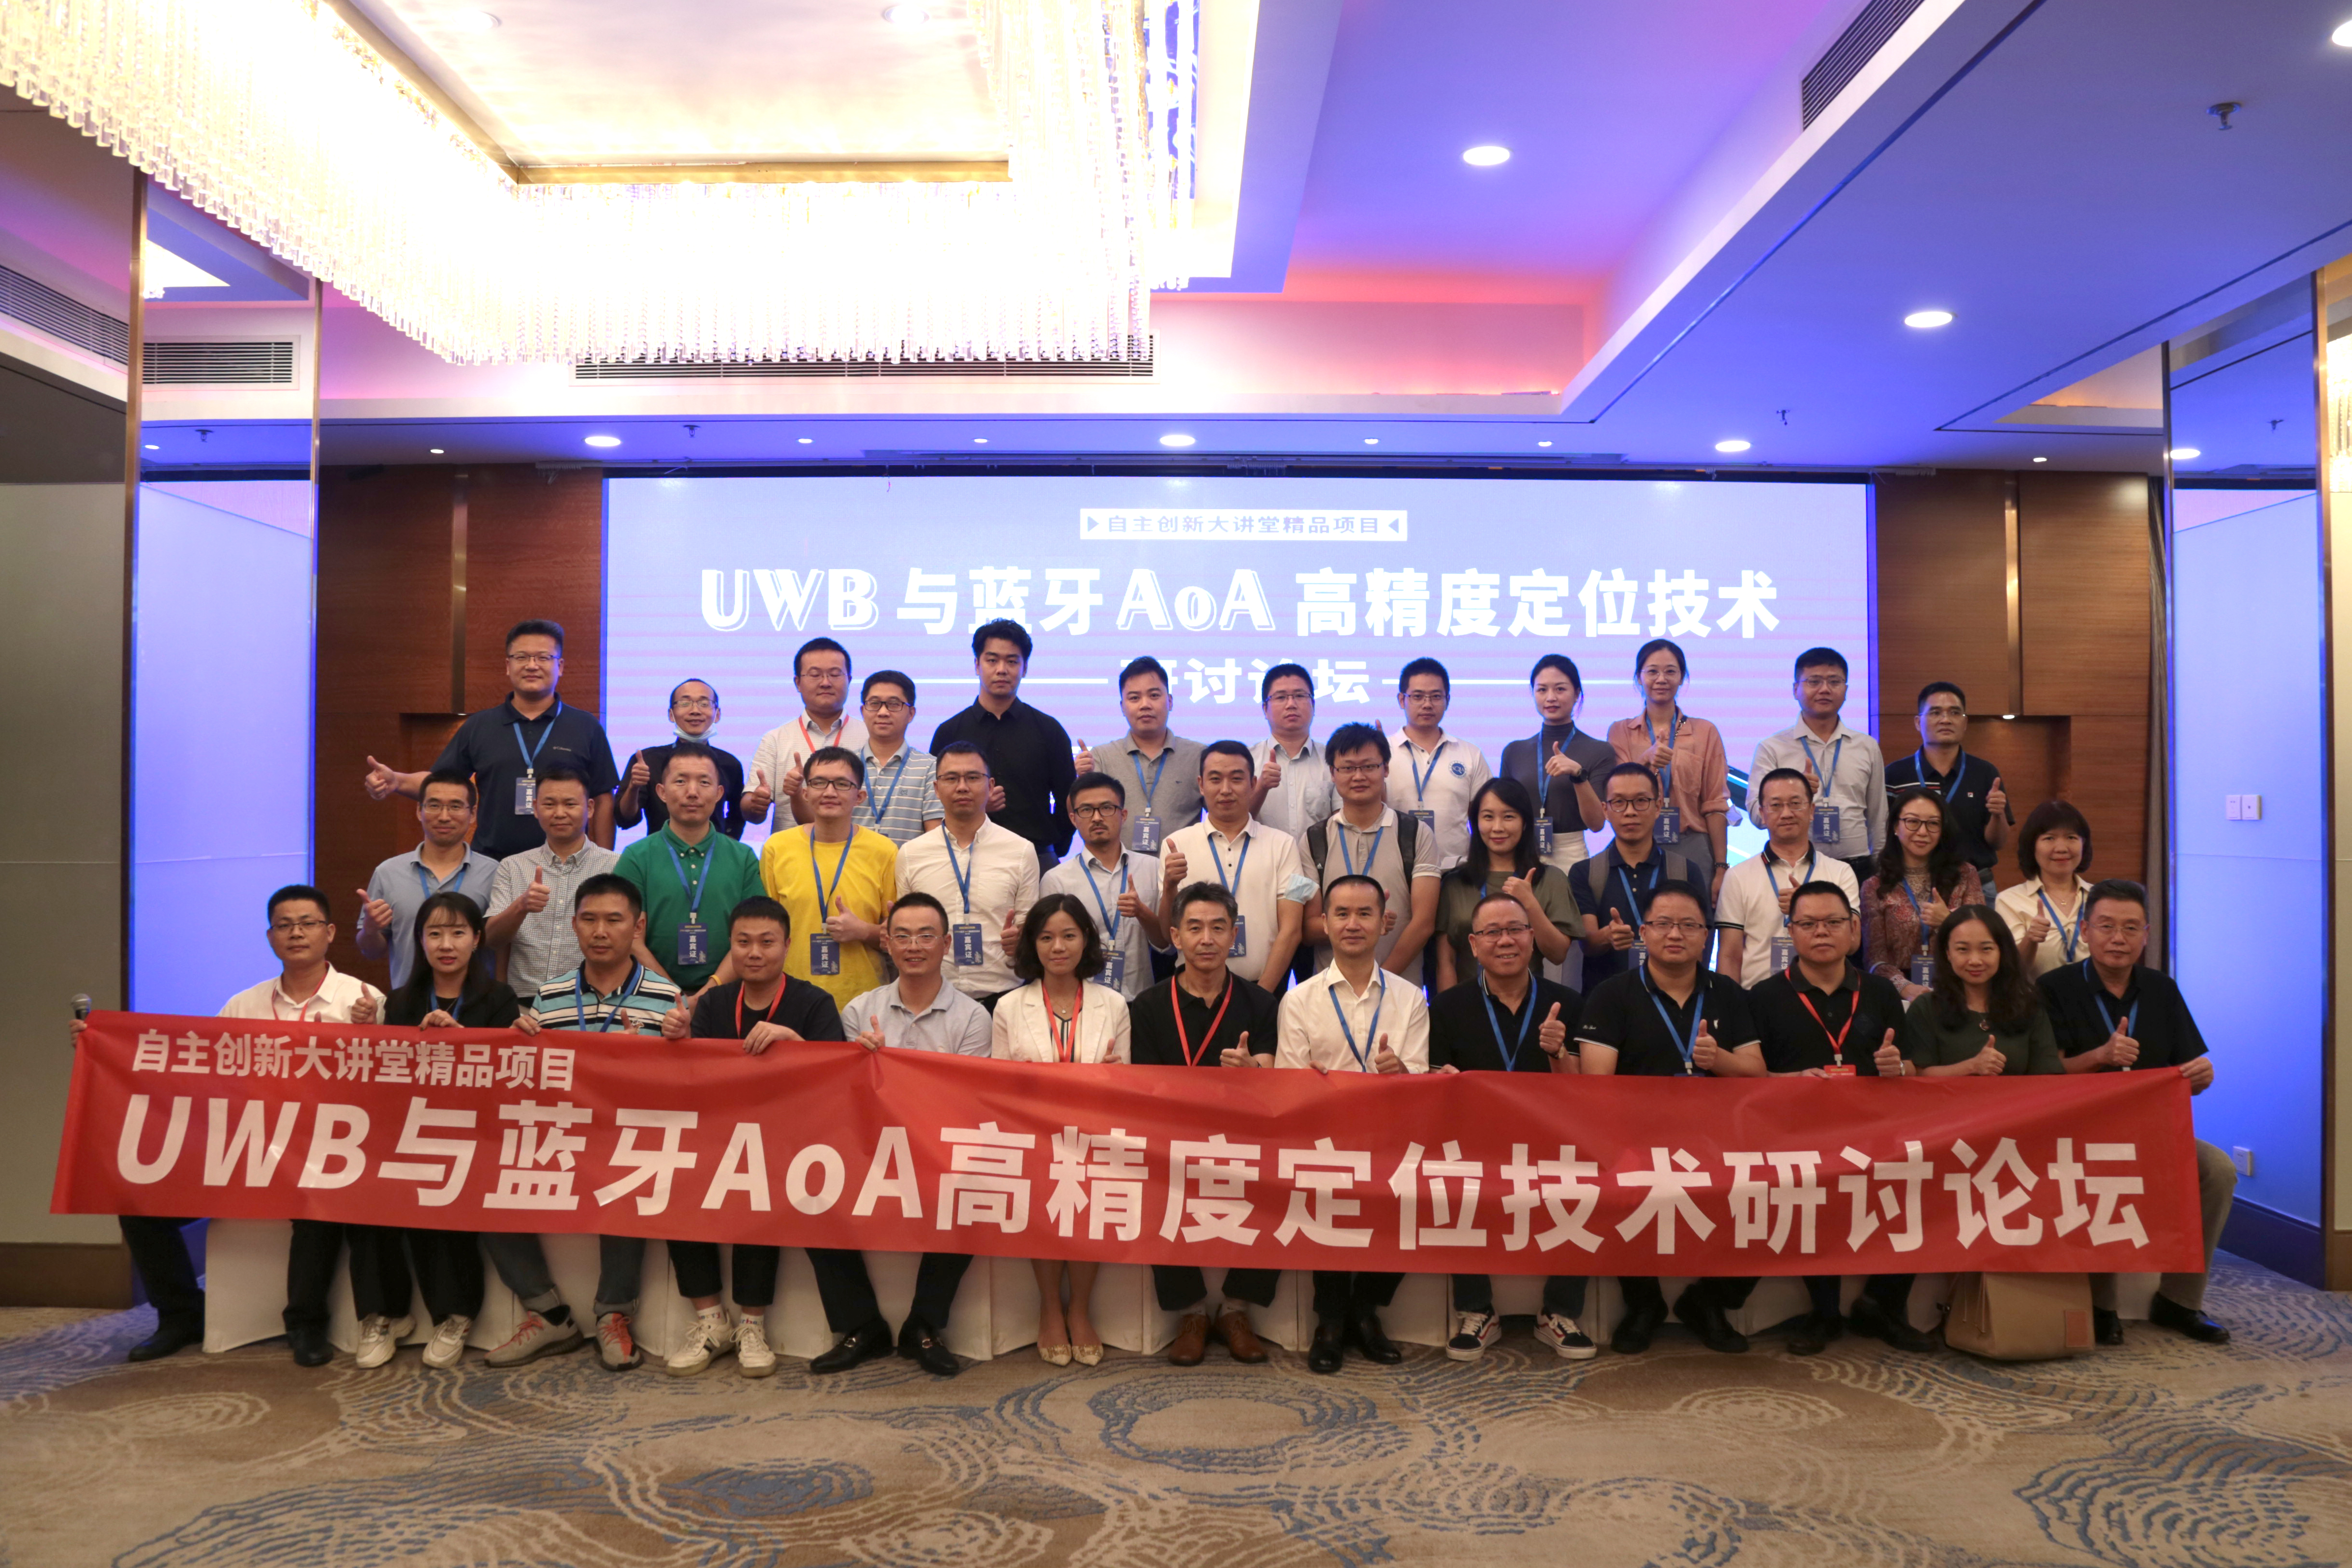 深圳市物聯網產業協會承辦的“自主創新大講堂精品項目-UWB與藍牙AoA高精度定位技術研討論壇”圓滿舉行